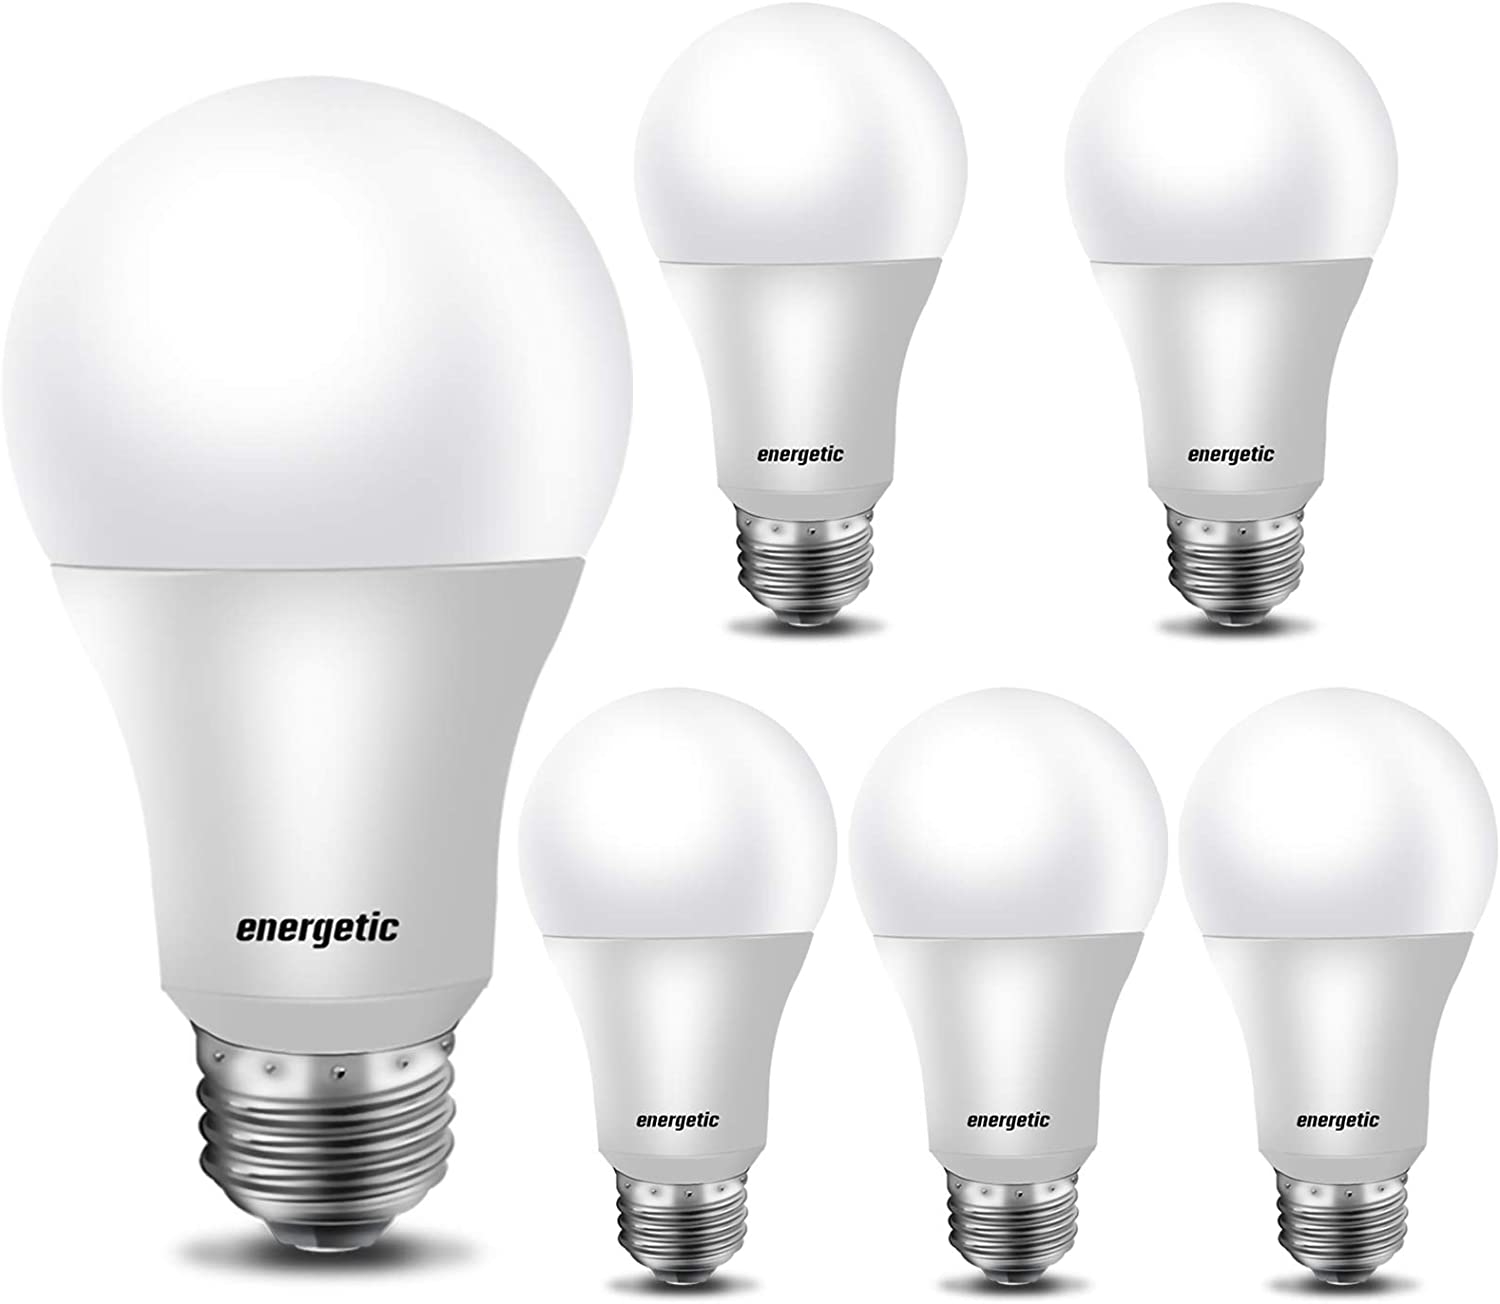 【Energy Star】60 Watt LED Light Bulb, Dimmable A19 LED Bulb, CRI90+, 800lm